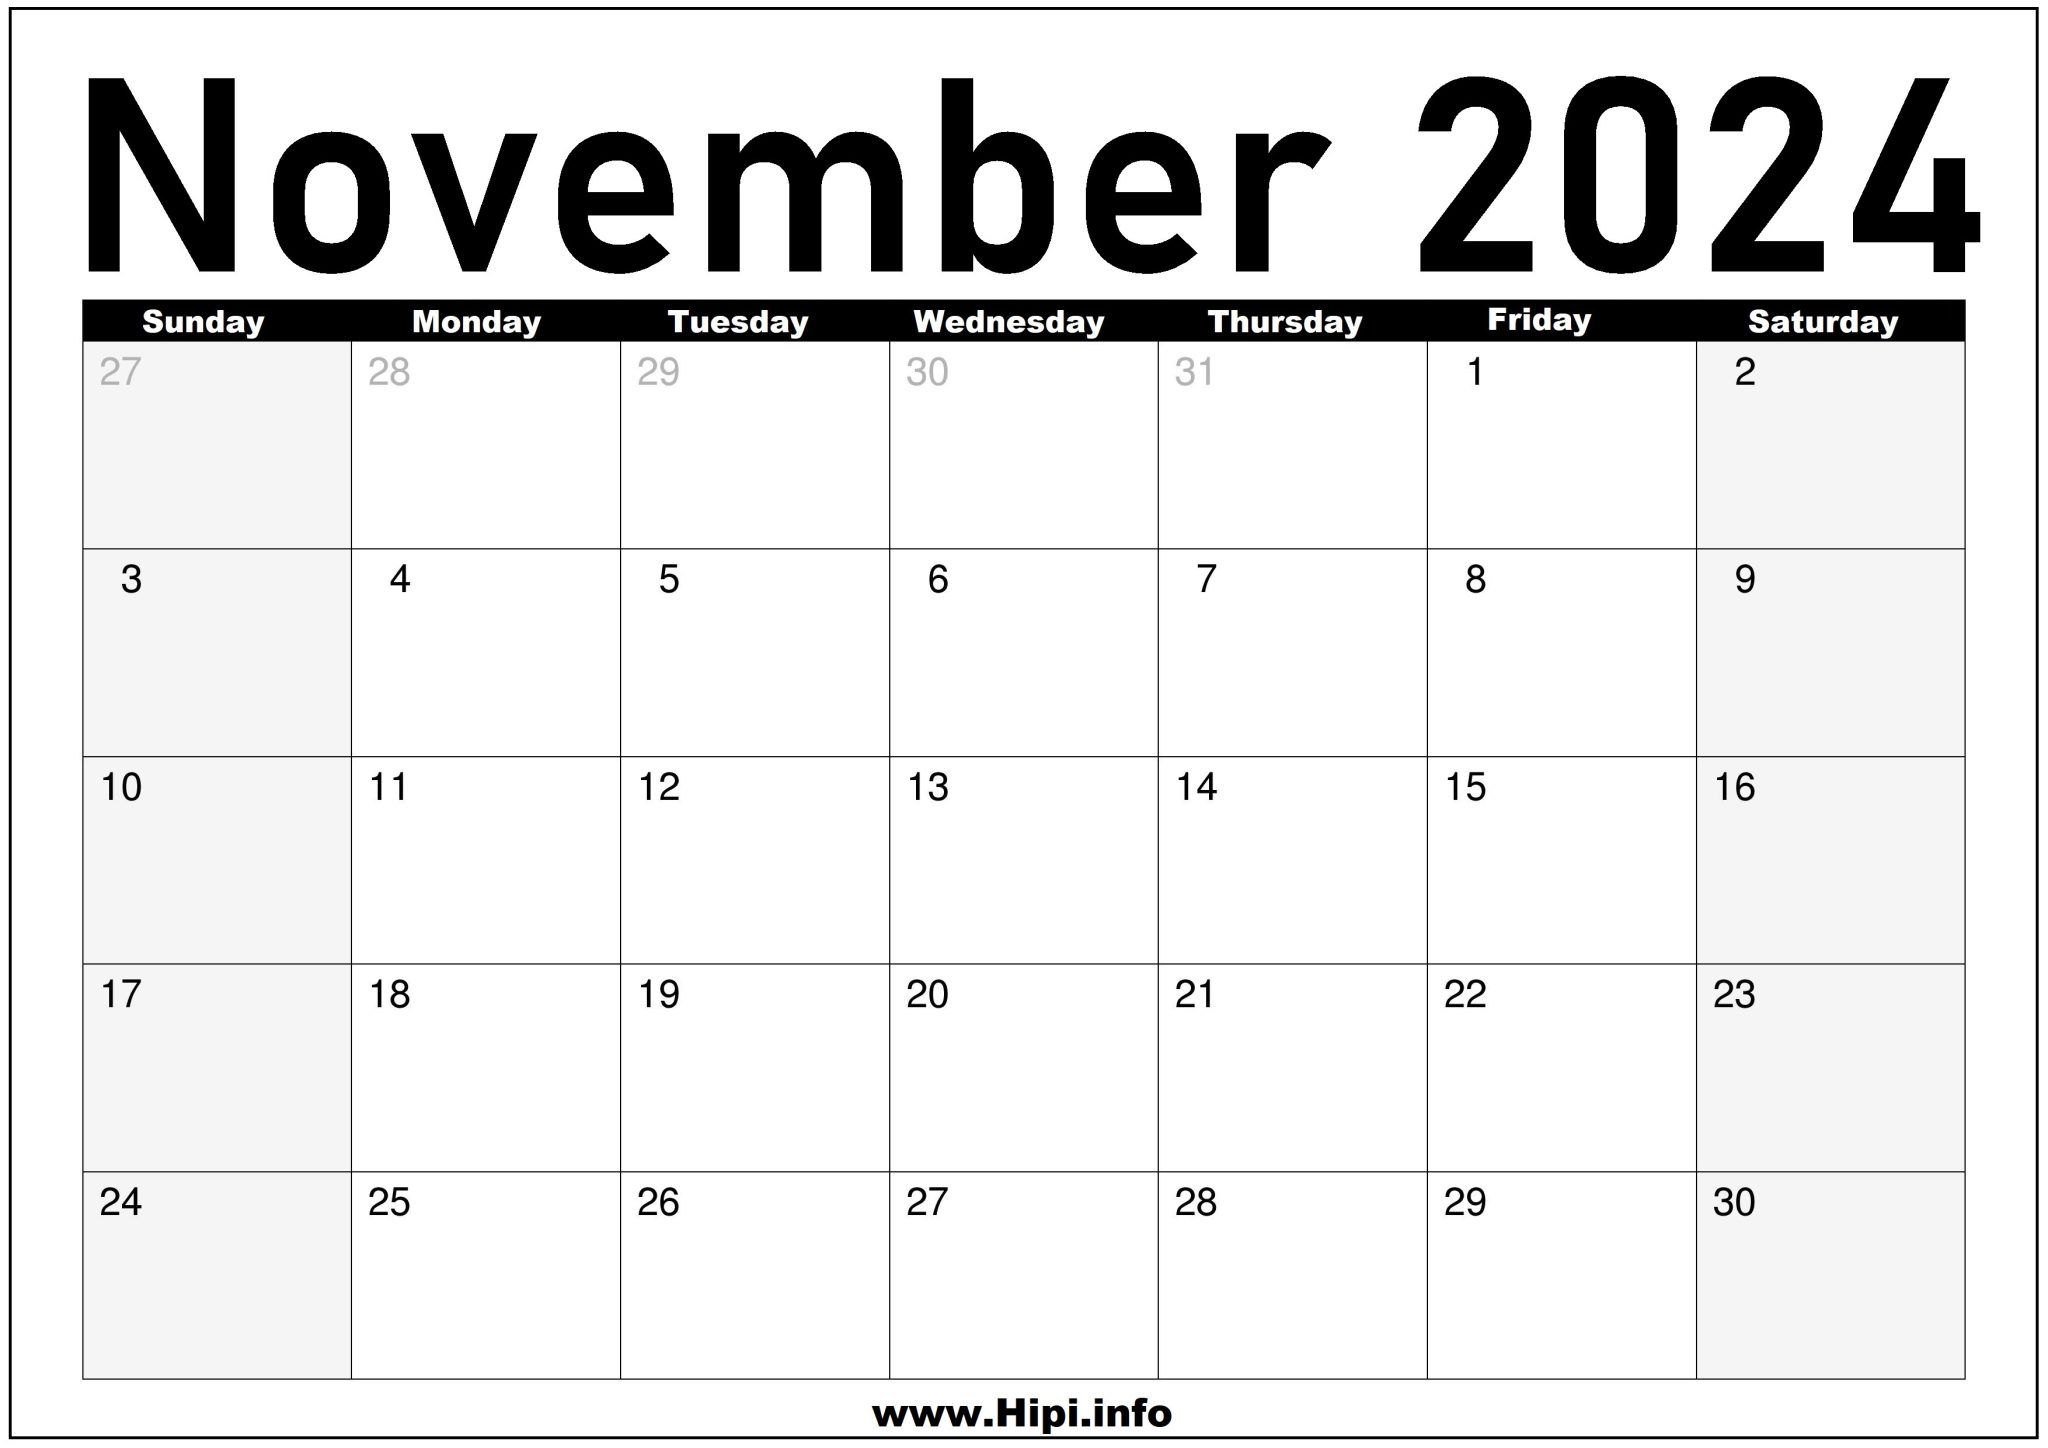 november-2024-calendar-monthly-hipi-info